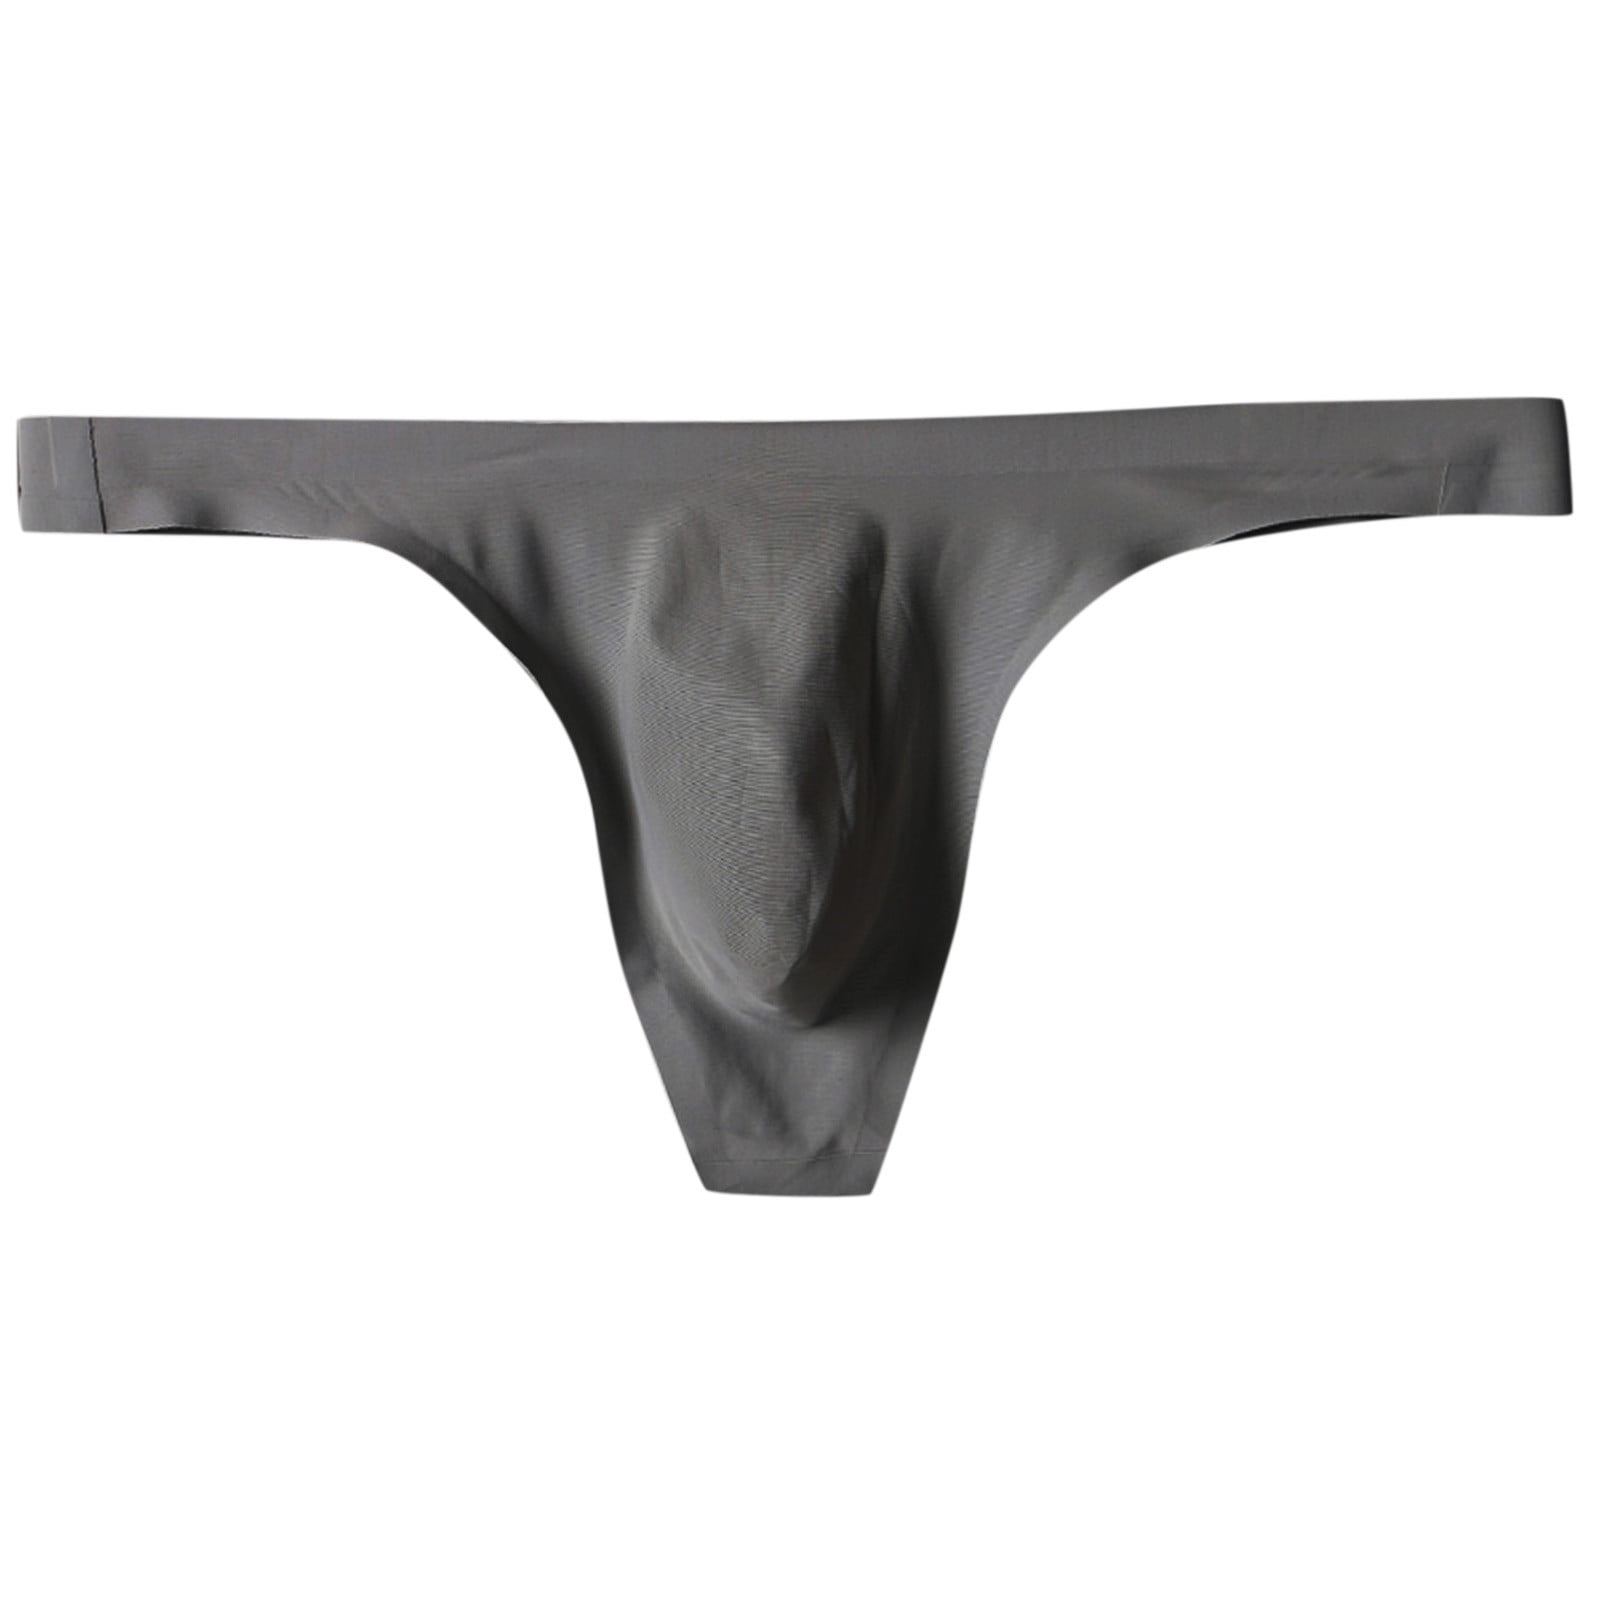 zuwimk Mens Underwear,Men's Cheeky Thong Underwear Mini Cheek Boxer Briefs Z-Gray,XL  